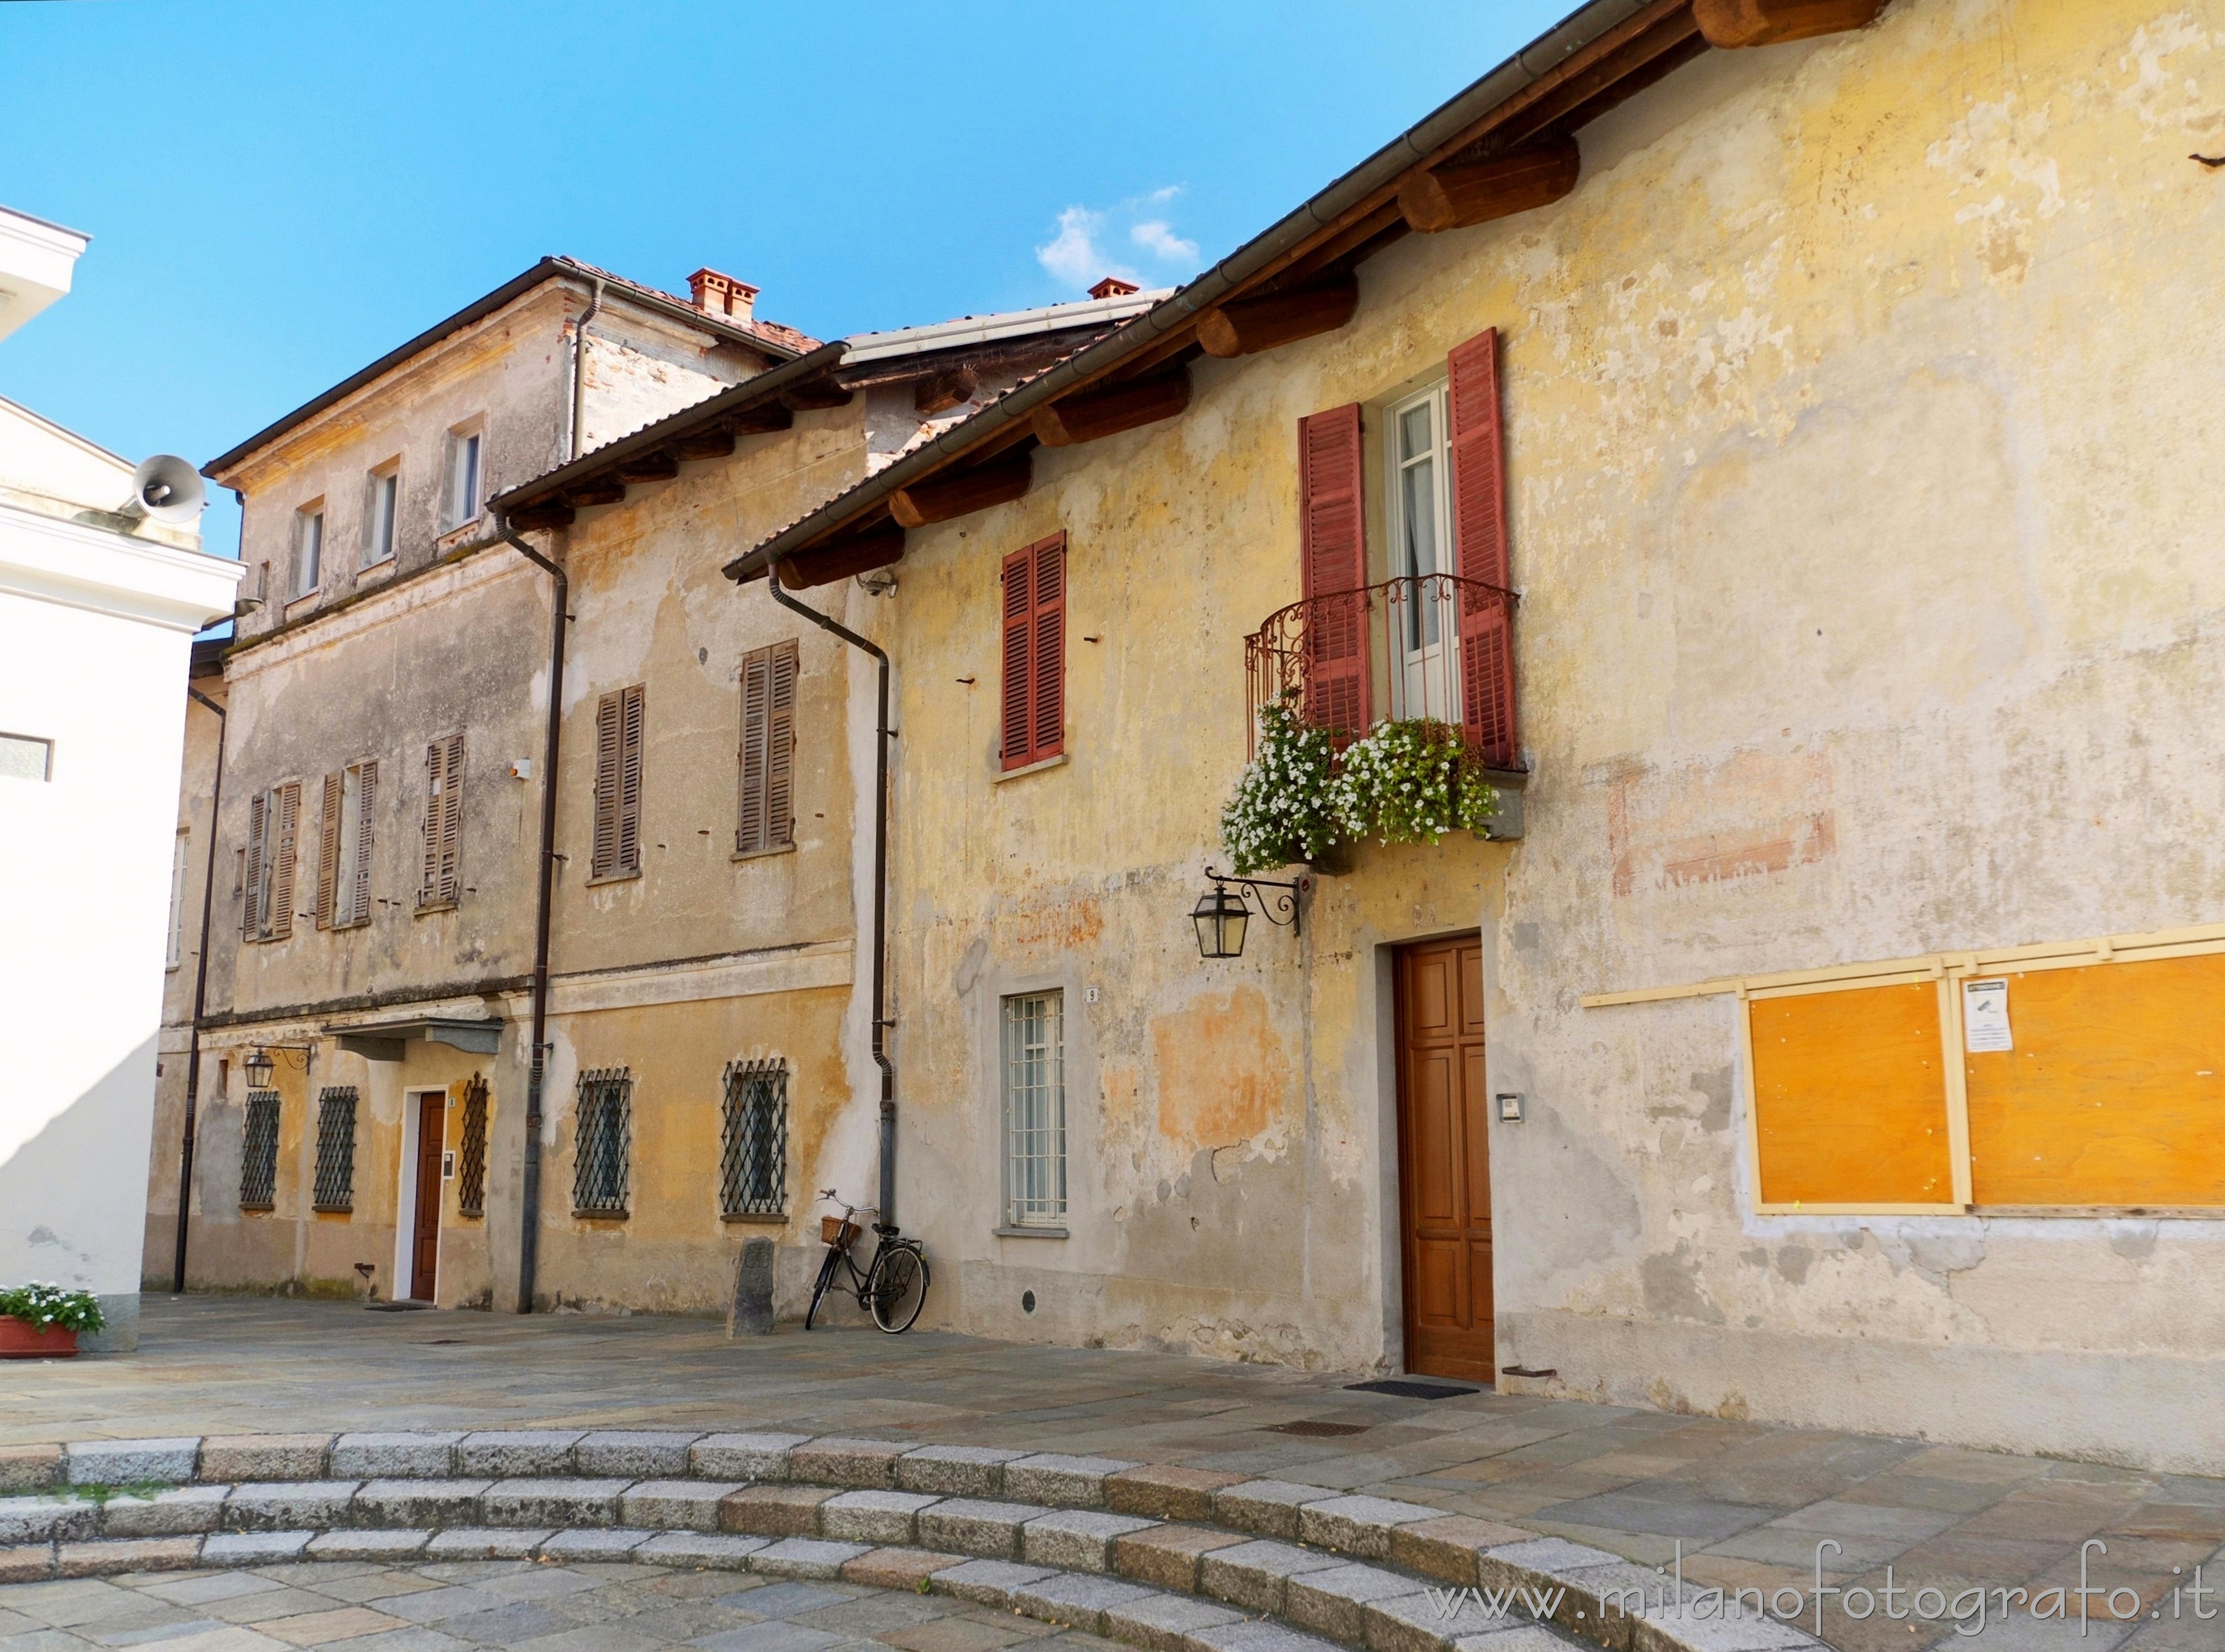 Vigliano Biellese (Biella, Italy): Houses in the old center of the town - Vigliano Biellese (Biella, Italy)